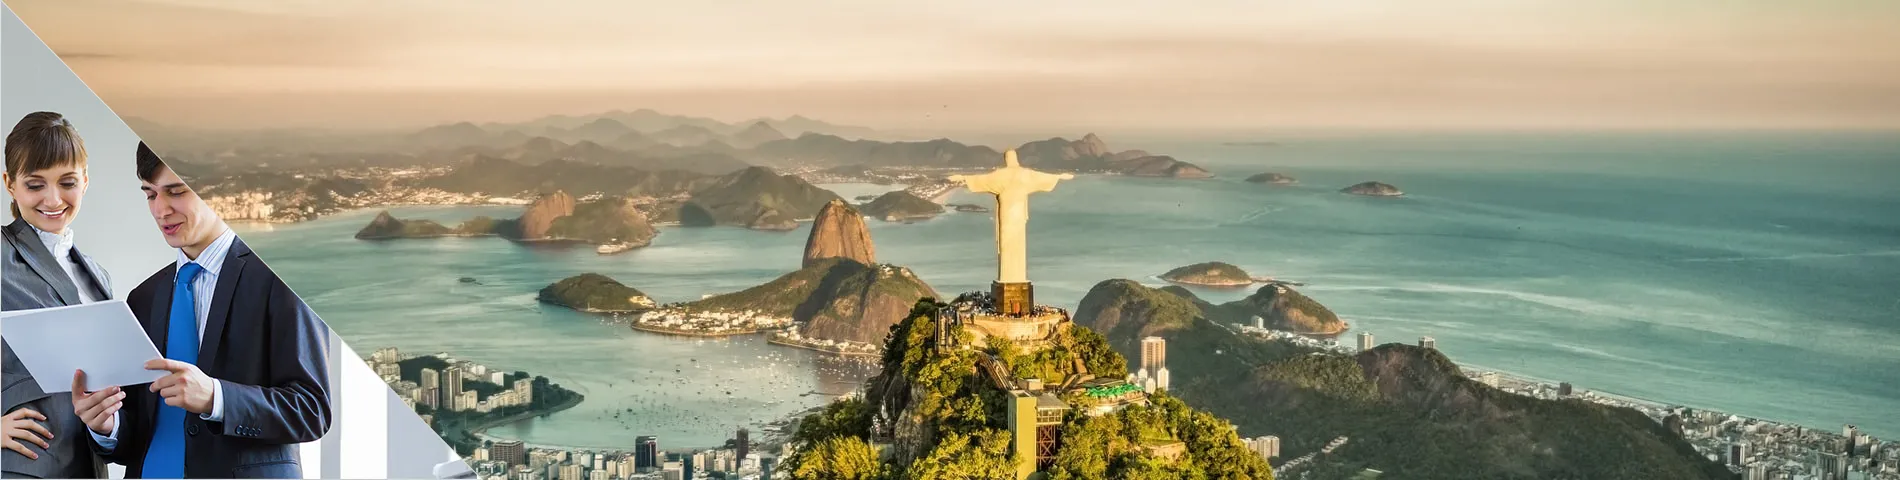 Rio de Janeiro - 